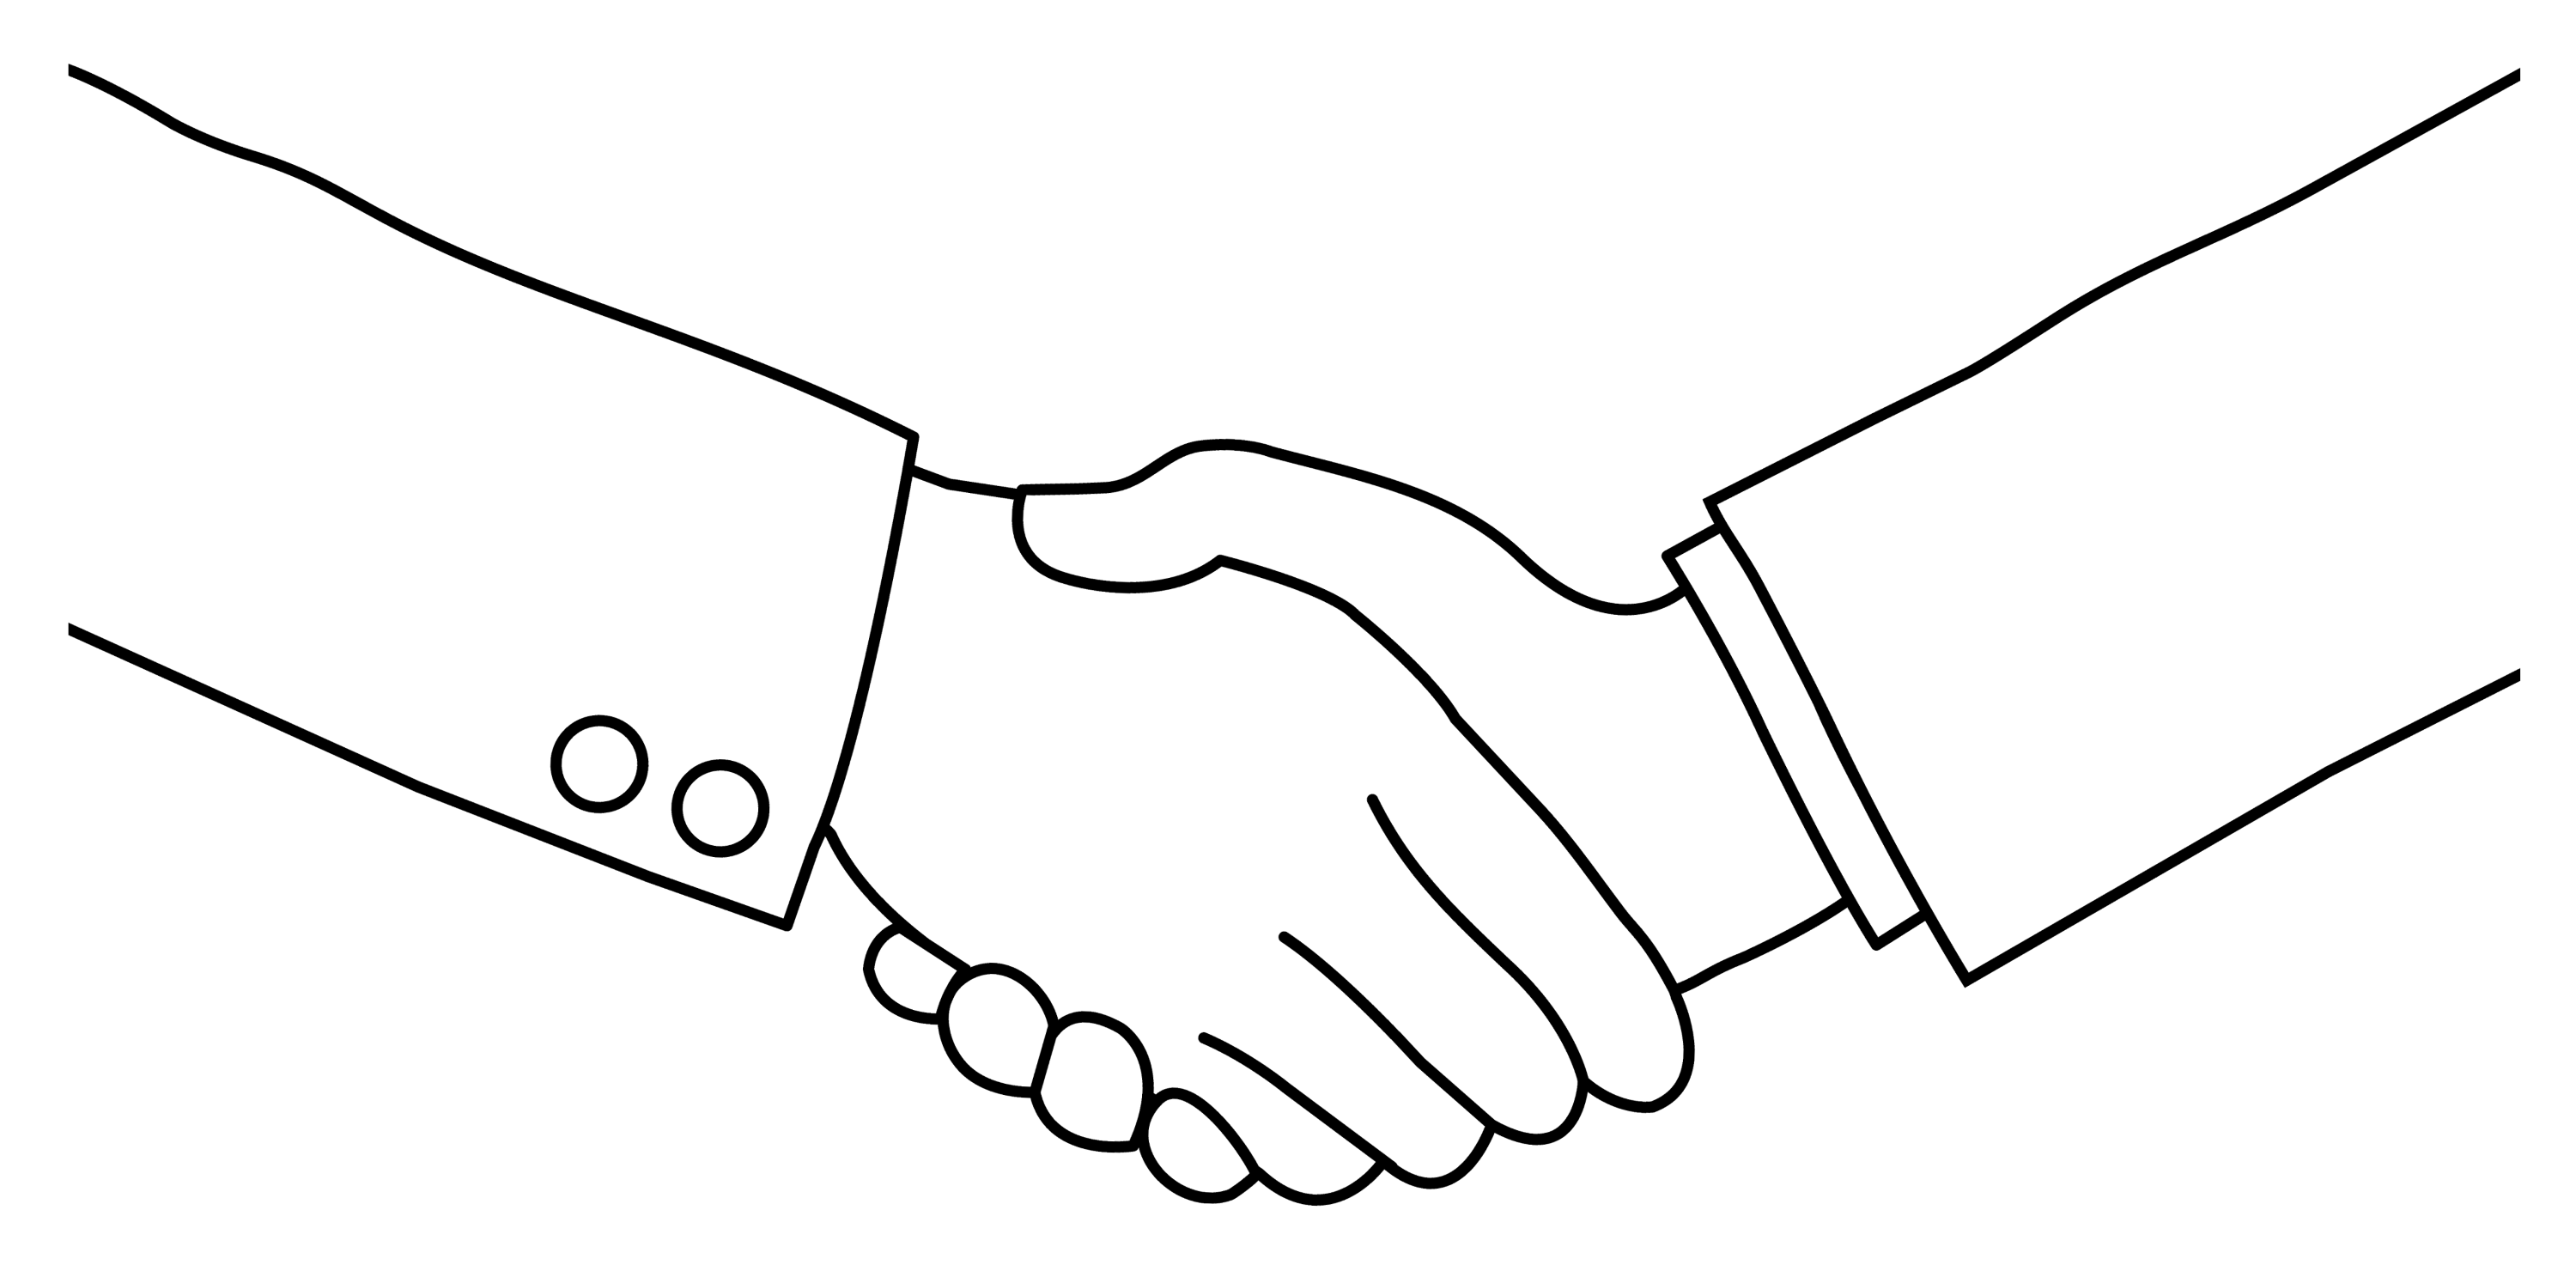 free business handshake clipart - photo #16